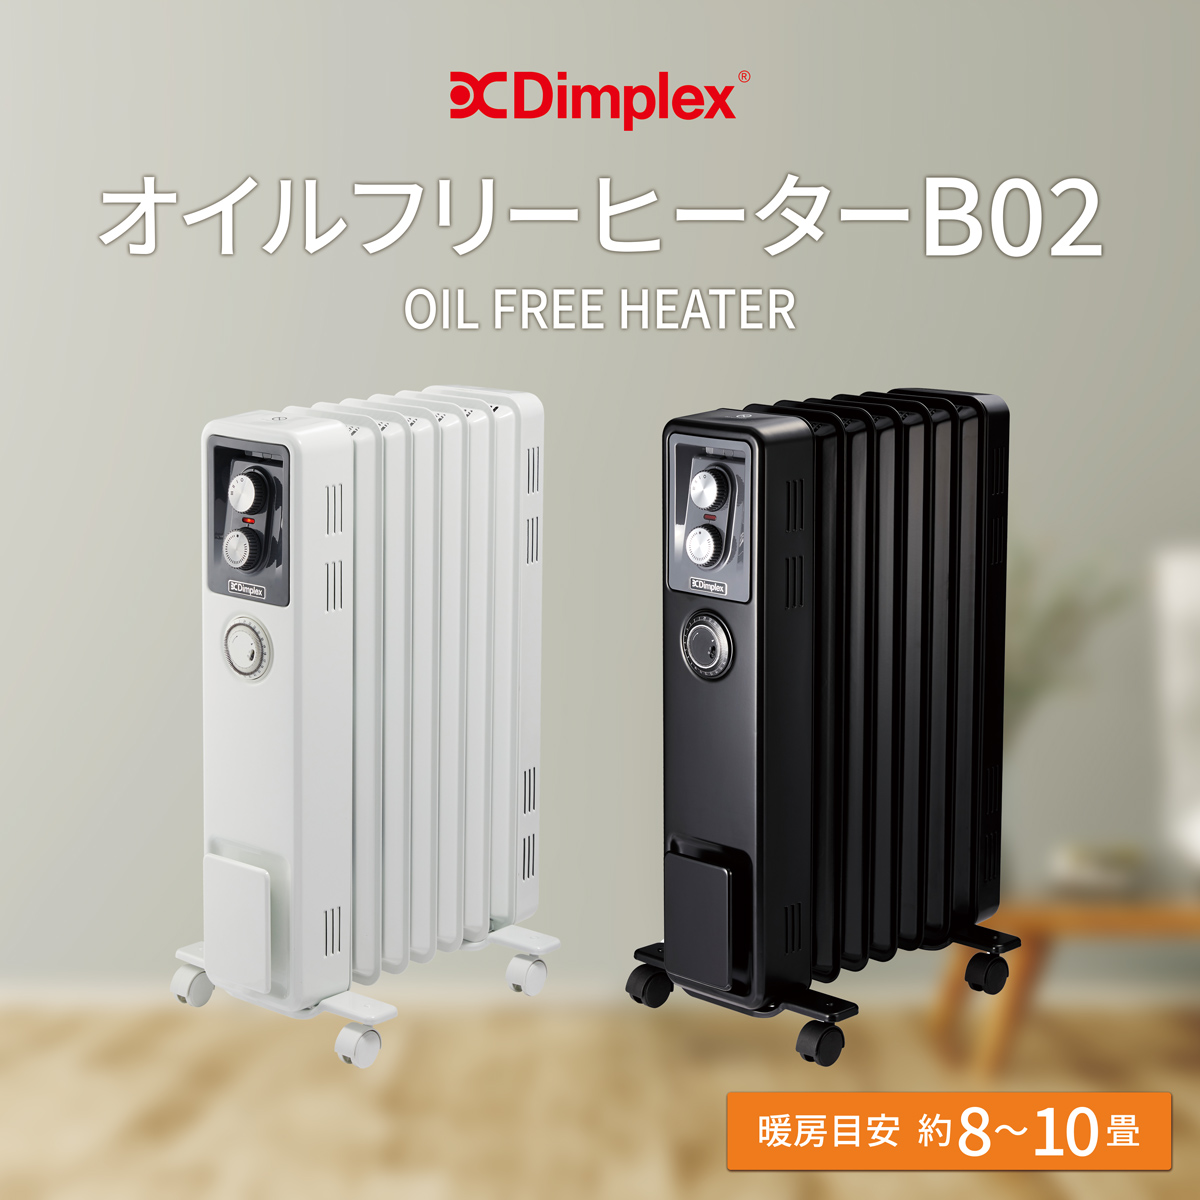 Dimplex オイルフリーヒーター（B02）オイルヒーターの良さはそのままに、環境とカラダに優しい省エネ暖房。